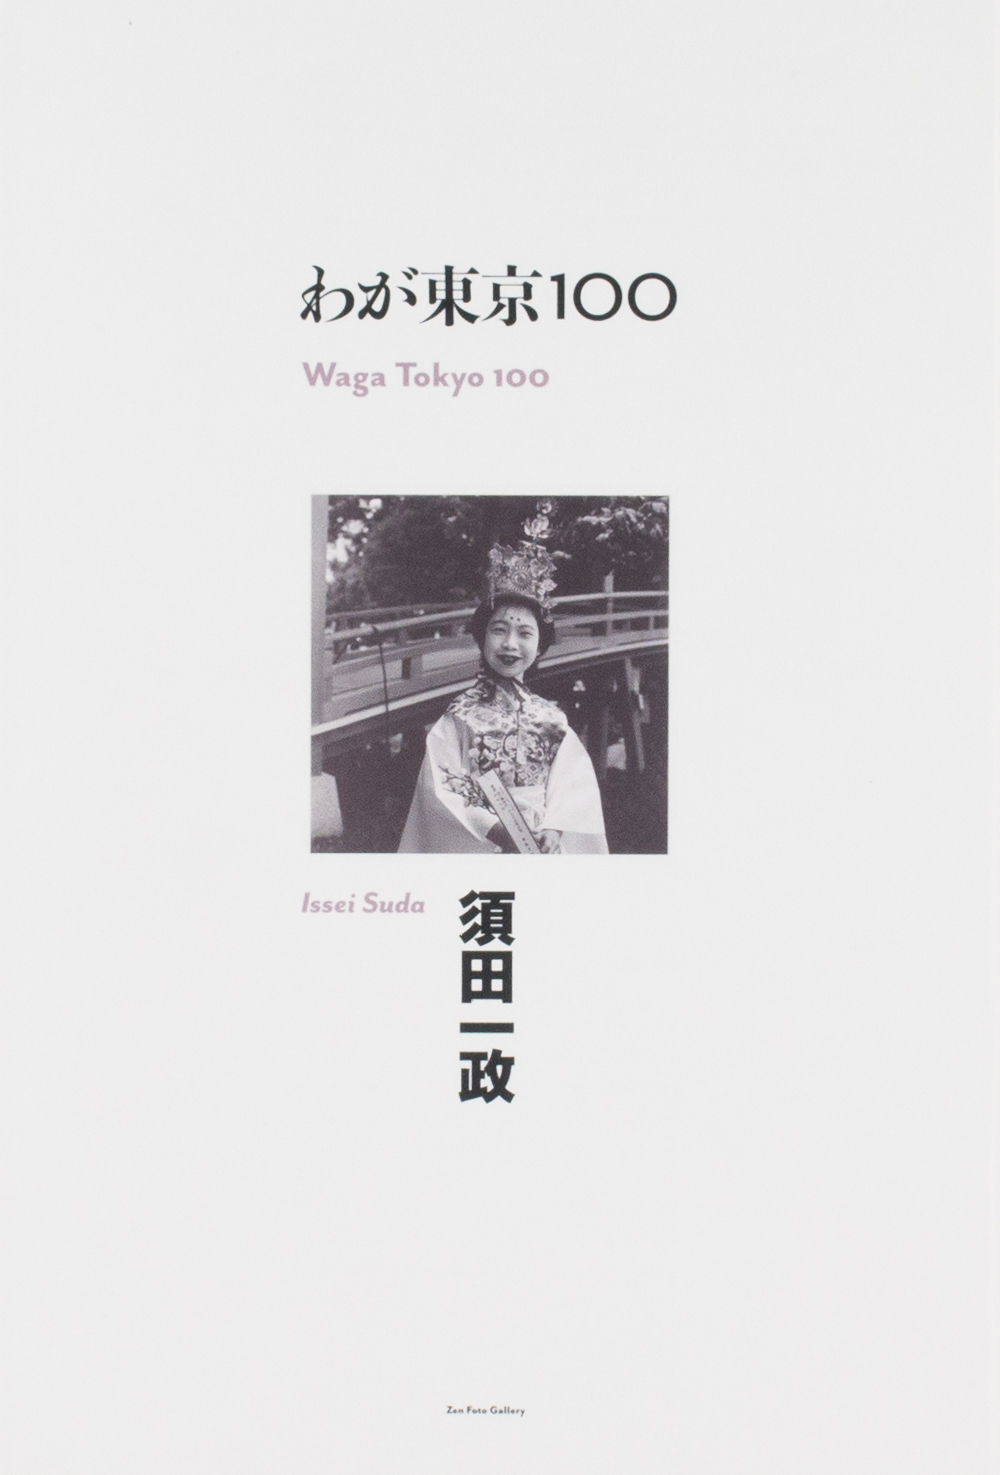 Waga Tokyo 100